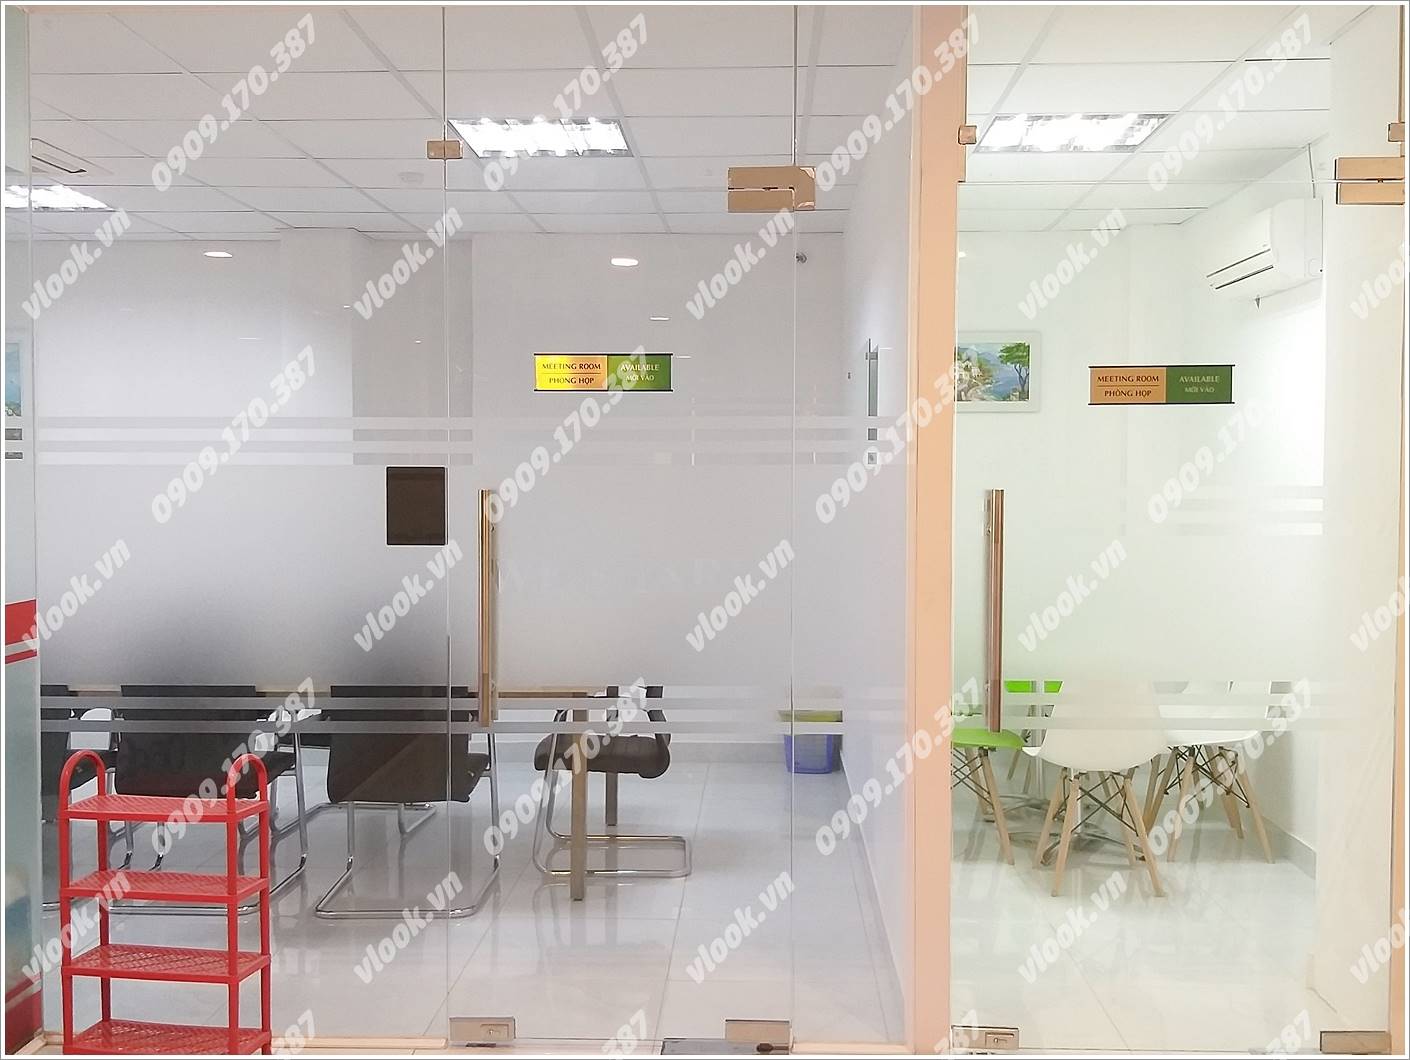 Cao ốc văn phòng cho thuê Phúc Thịnh Building, Cao Thắng, Quận 3 TP.HCM - vlook.vn